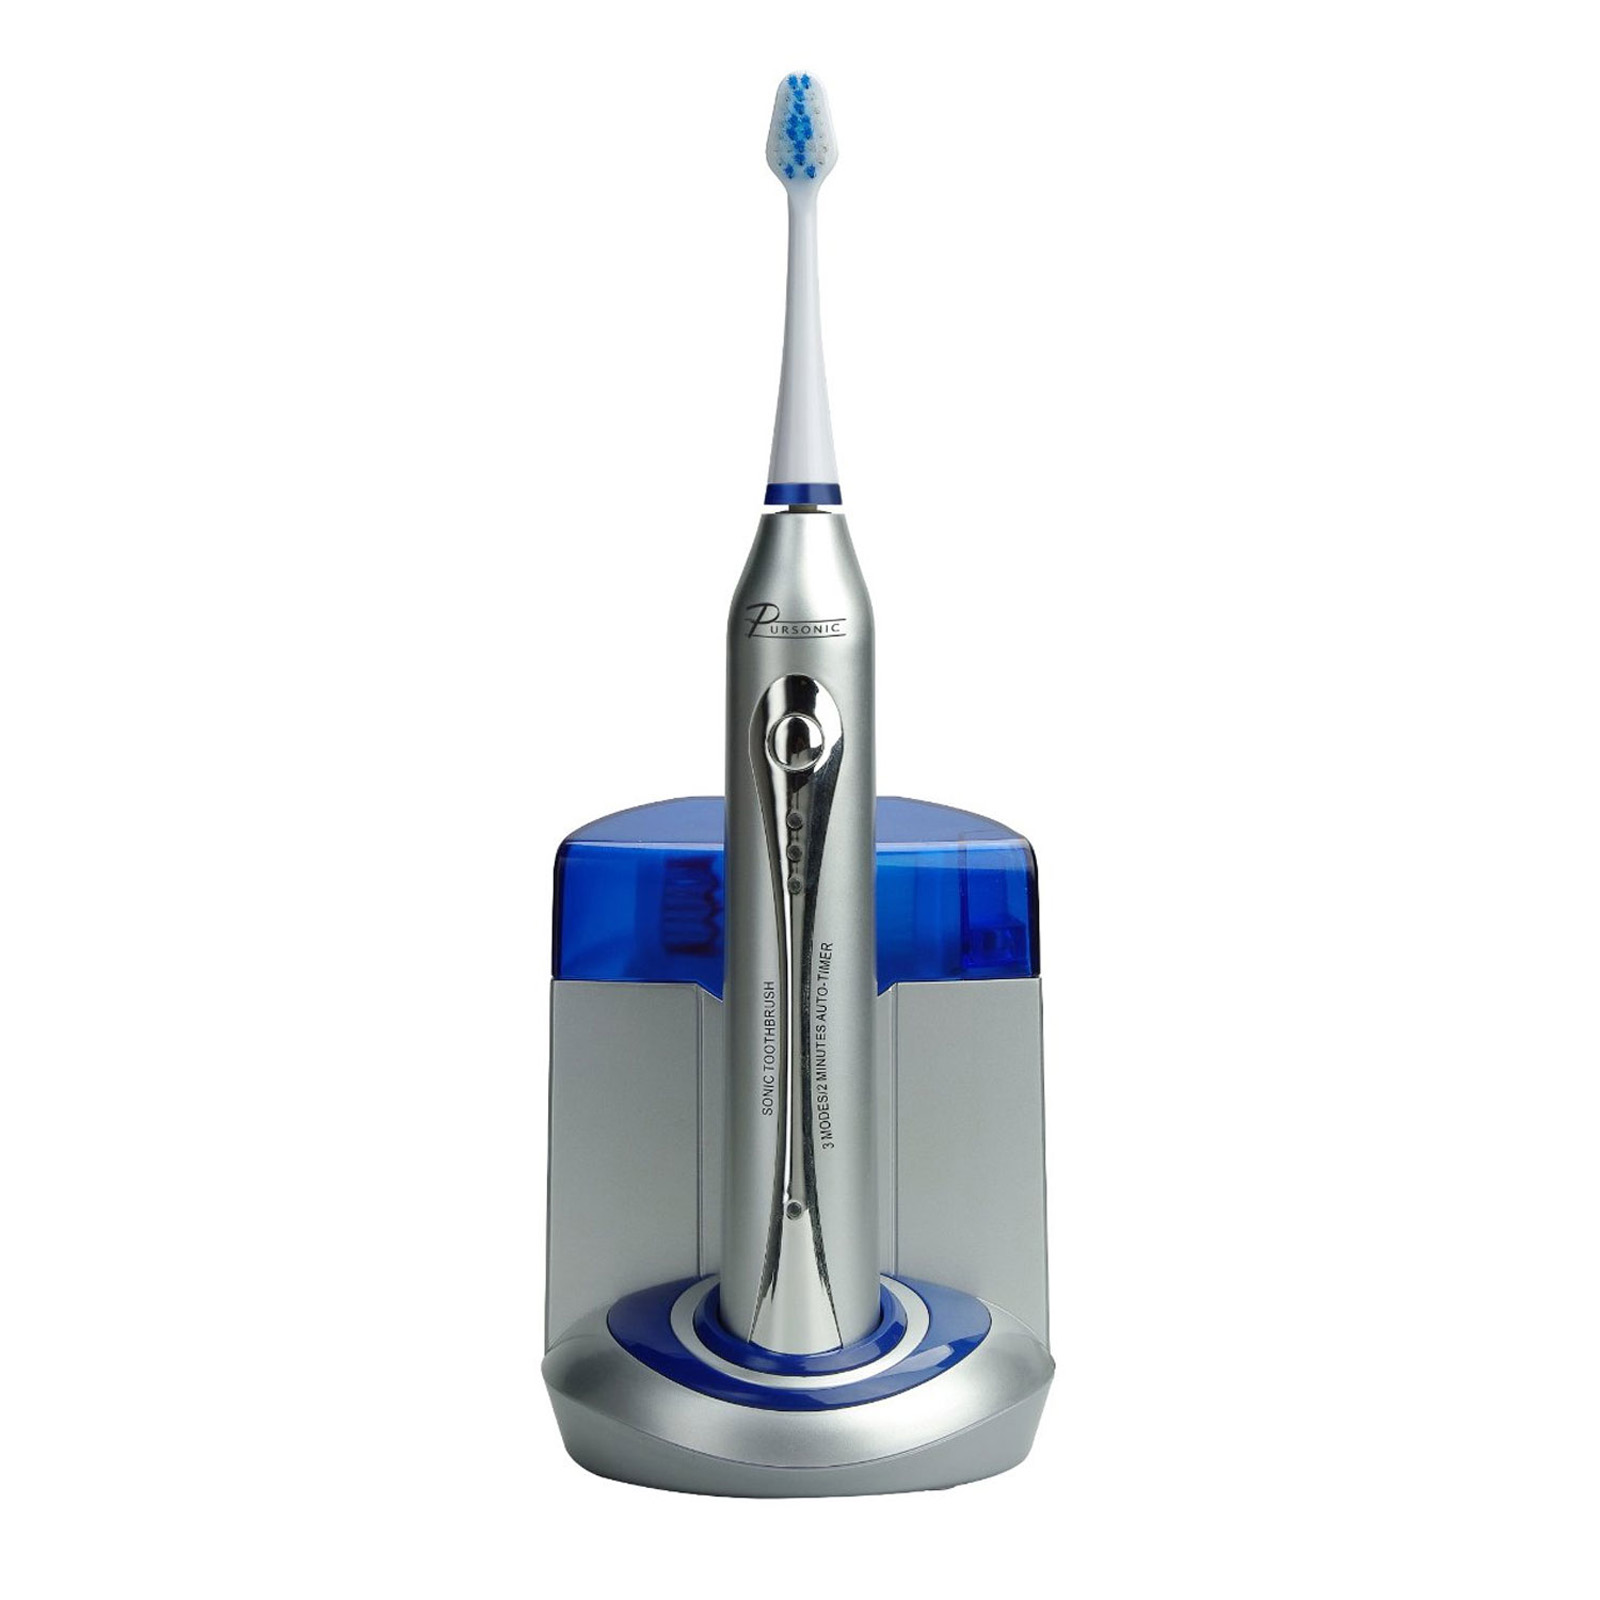 Pursonic Toothbrush with UV Sanitizing Function w/ Bonus 12 Brush Heads